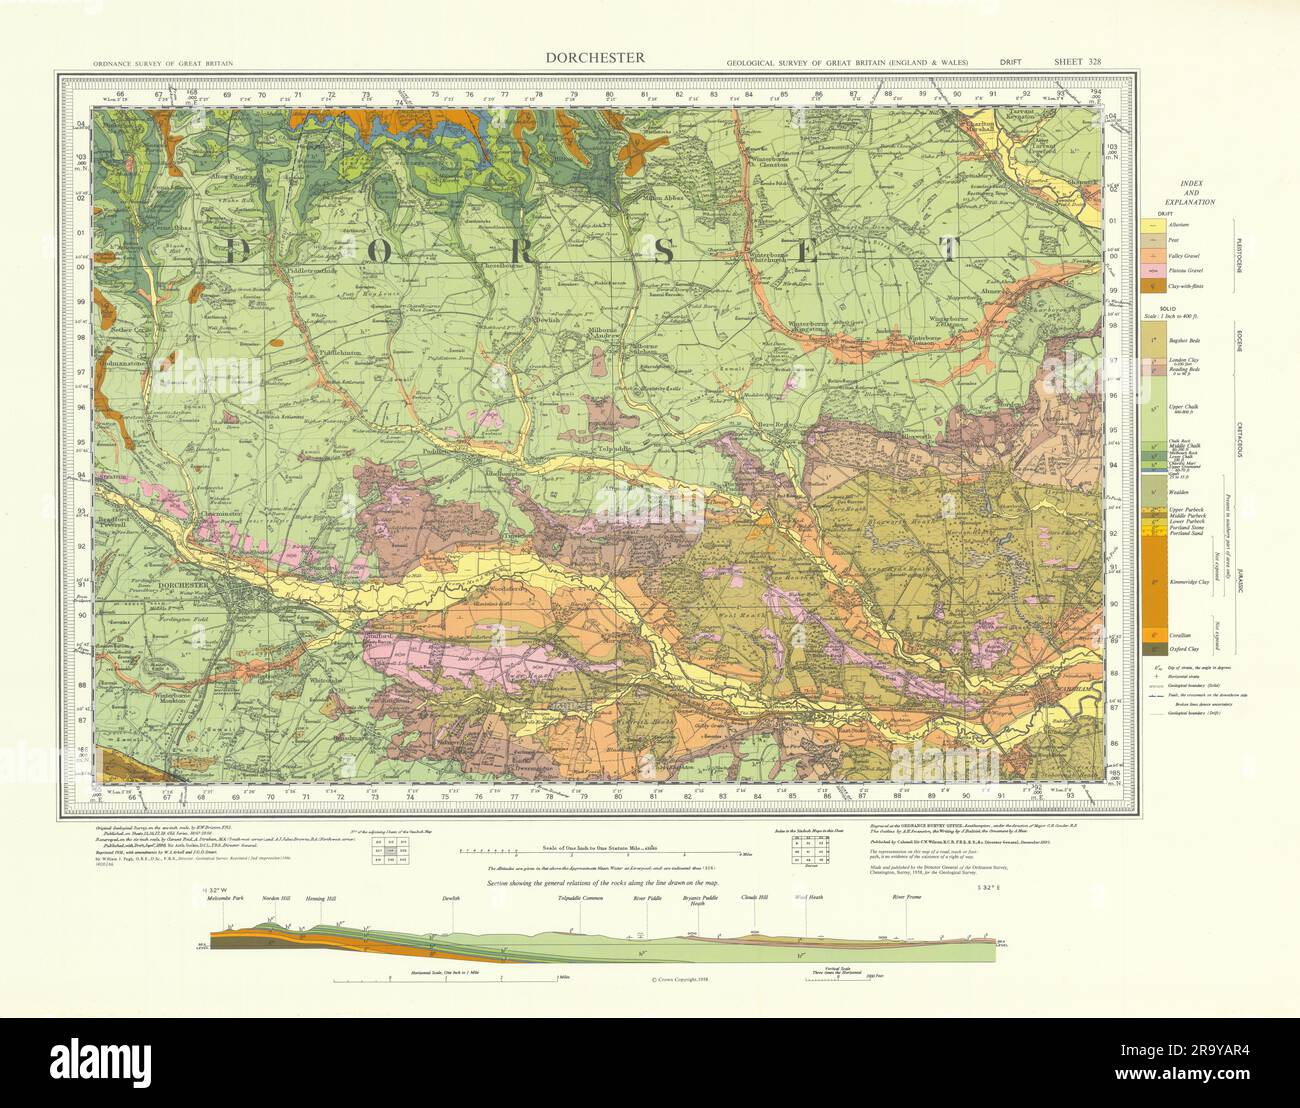 Dorchester. Geologische Landkarte aus dem Vintage-Stil. Blatt 328. Dorset Dorset Downs 1966 Stockfoto